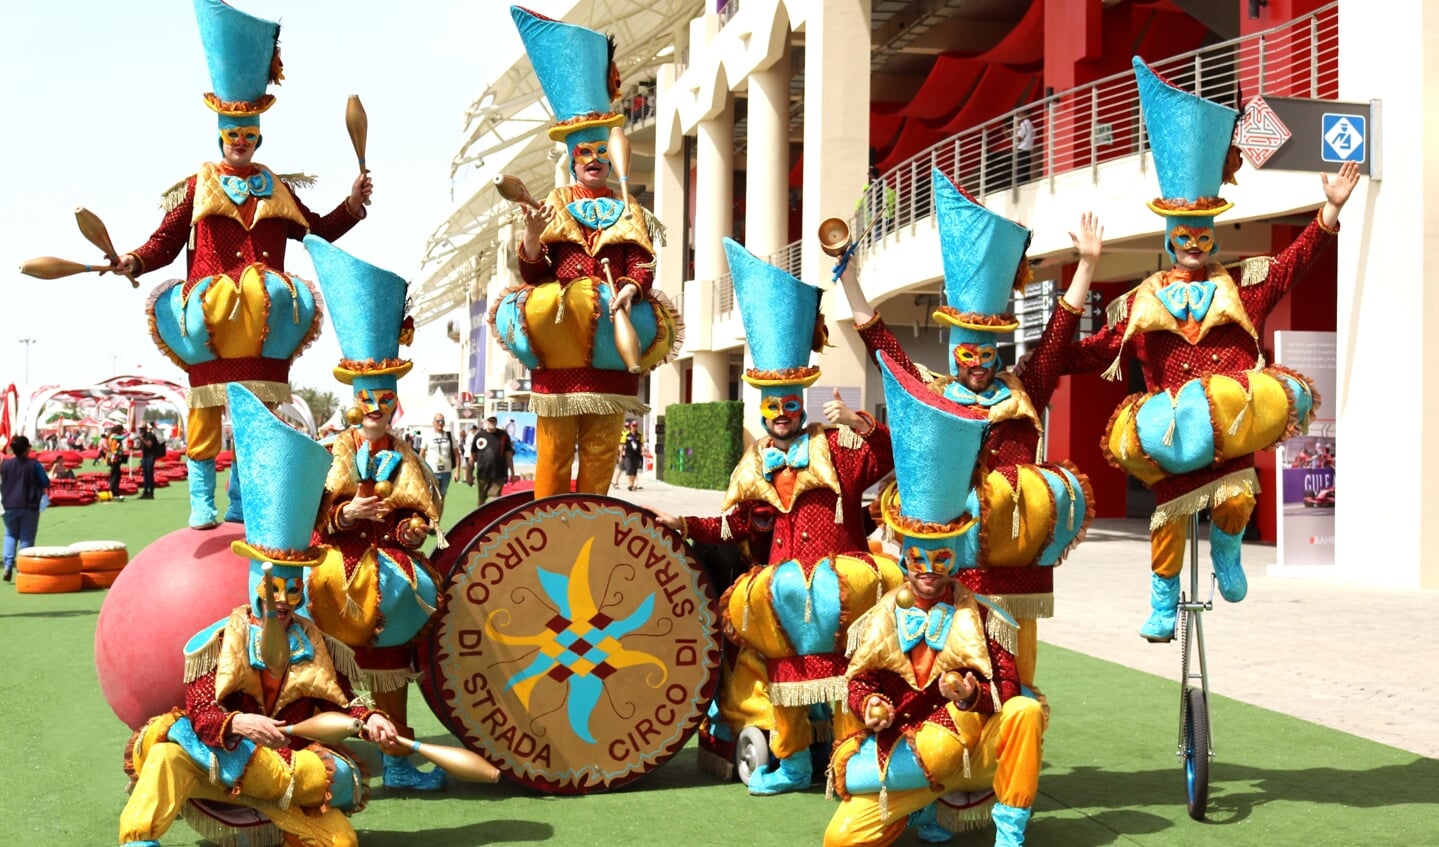 De kleurrijke artiesten van de Circus Parade.